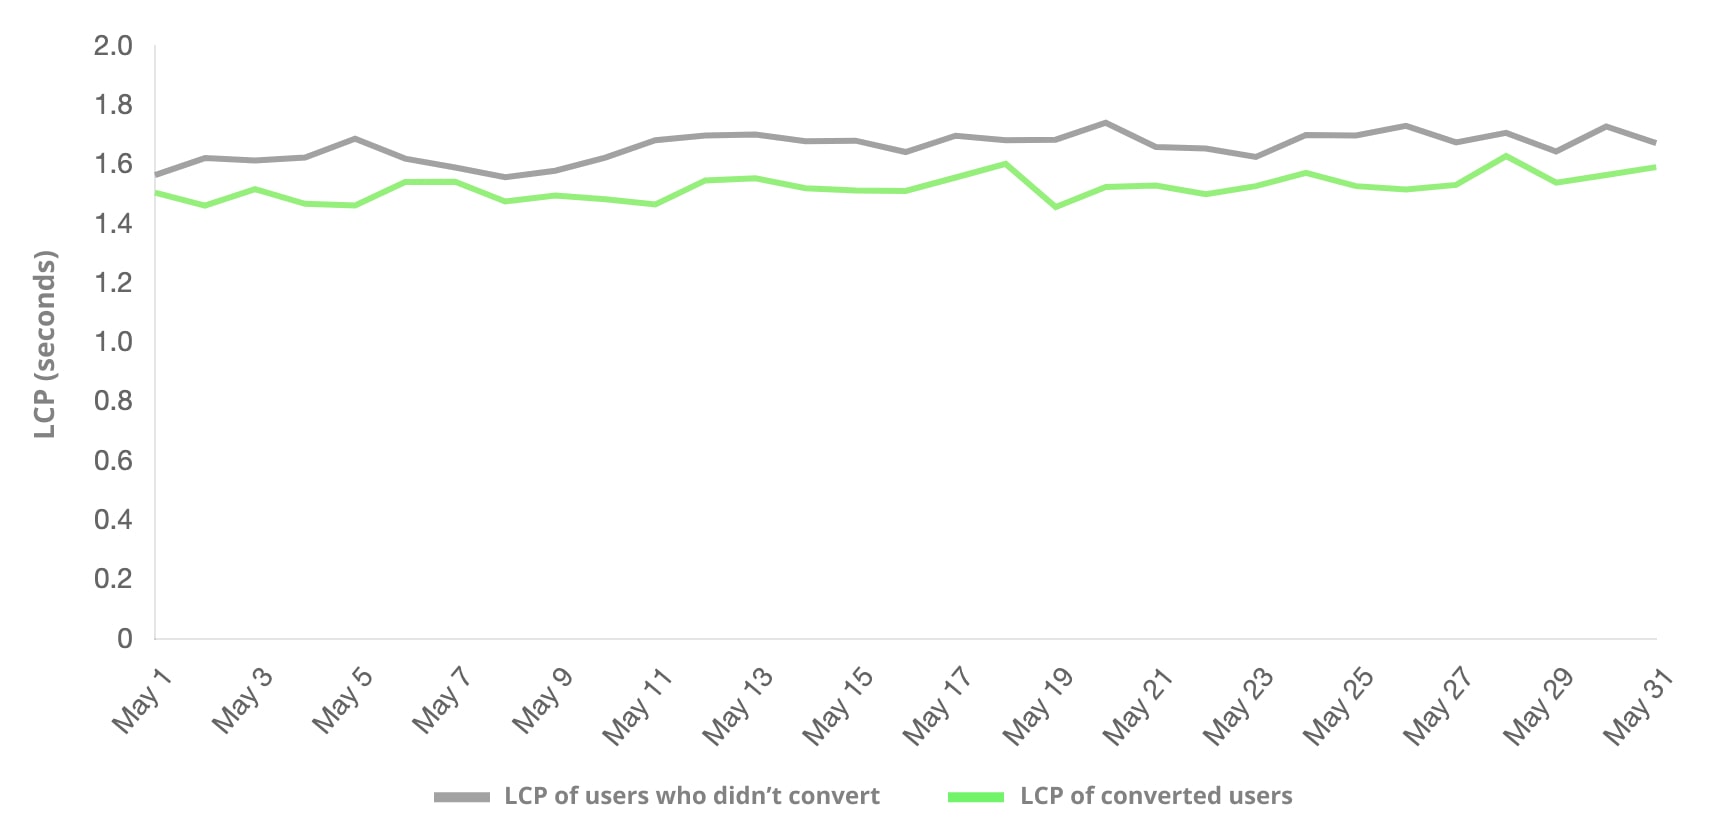 Un confronto tra utenti che hanno effettuato una conversione e utenti che non hanno effettuato la conversione tramite LCP. Il gruppo di utenti che ha effettuato la conversione con maggiore frequenza ha riscontrato un LCP inferiore.